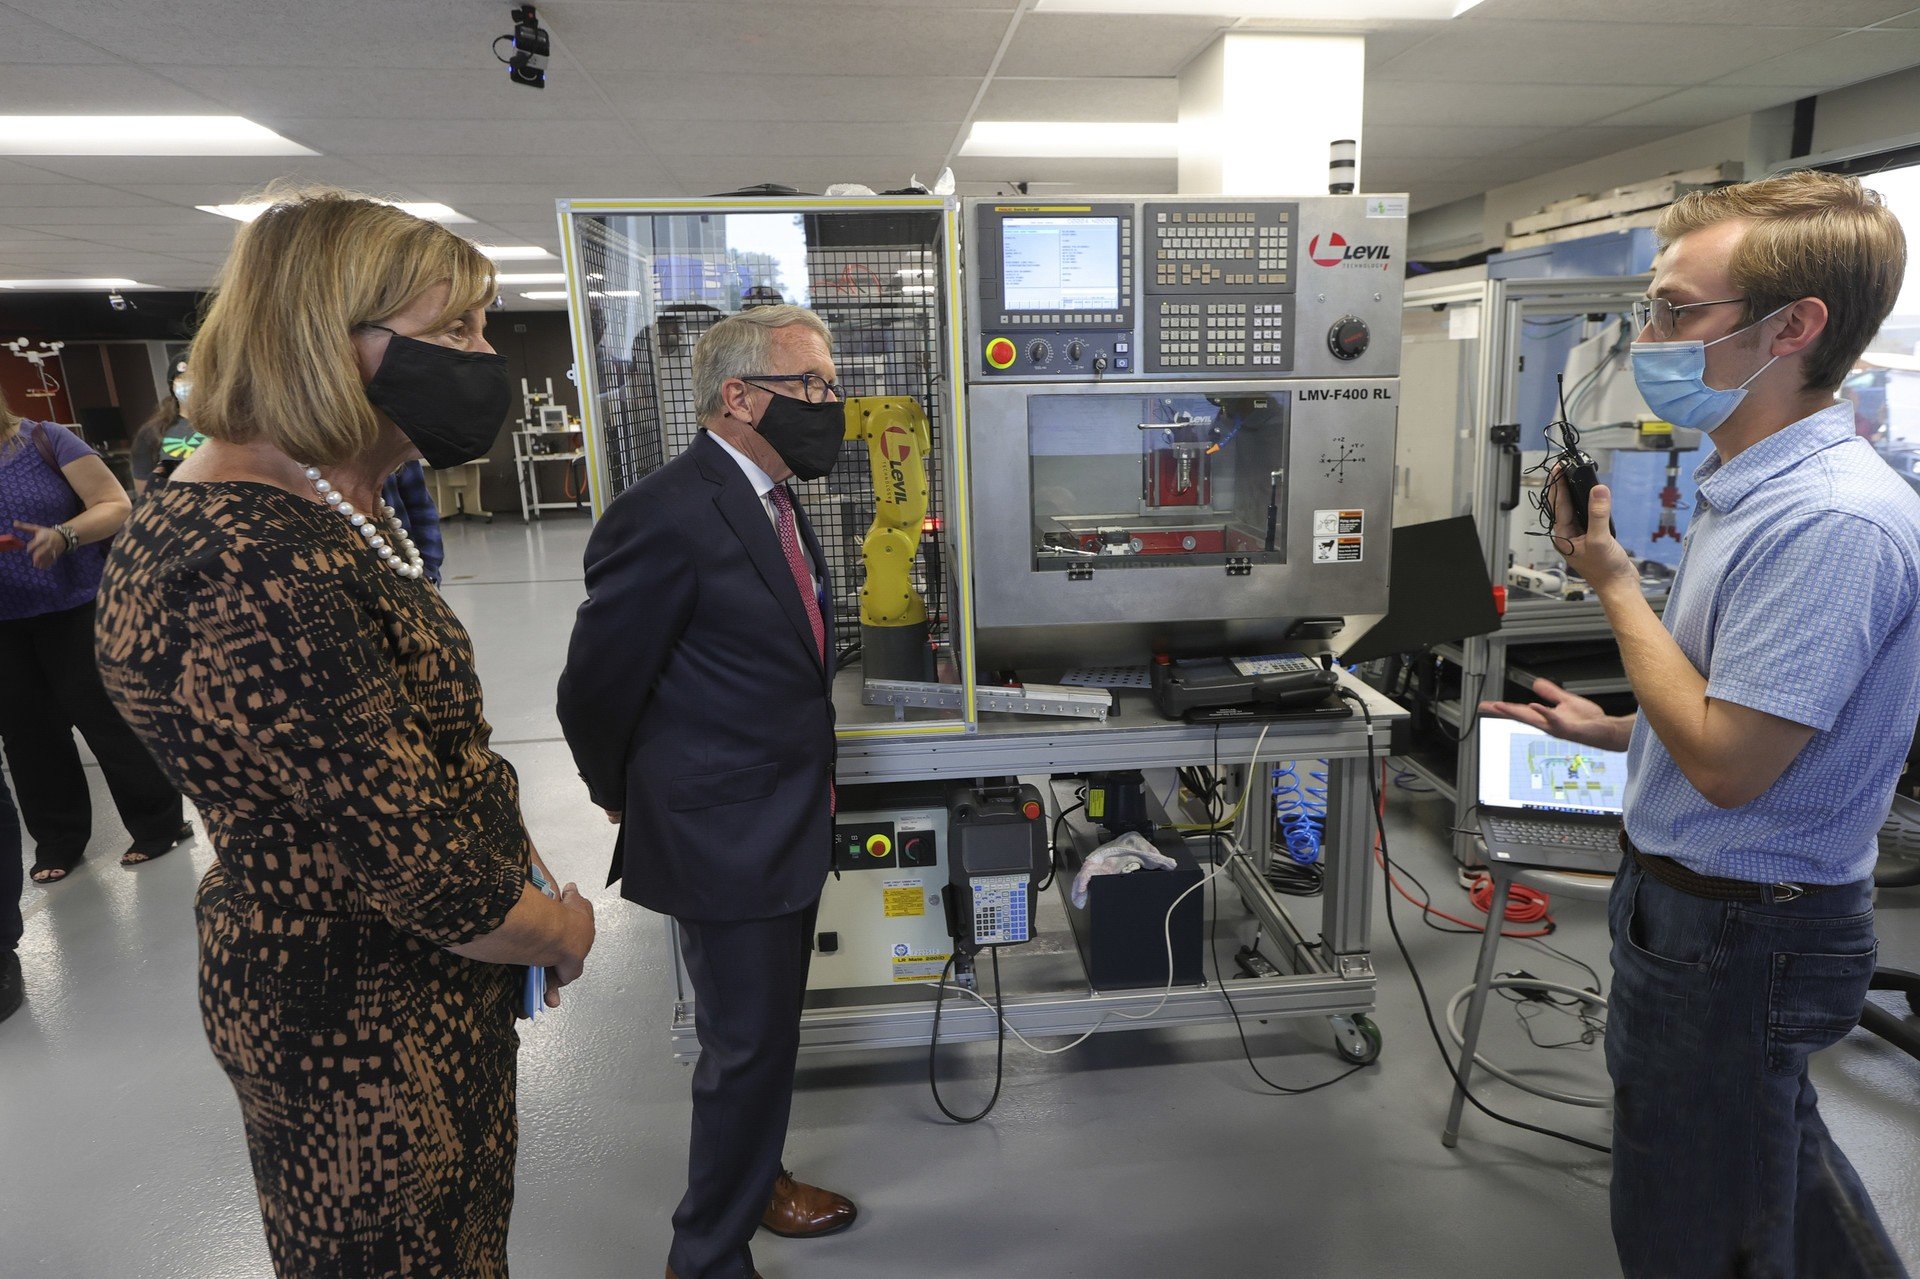 Dewine - Ohio governor looking at robotics display